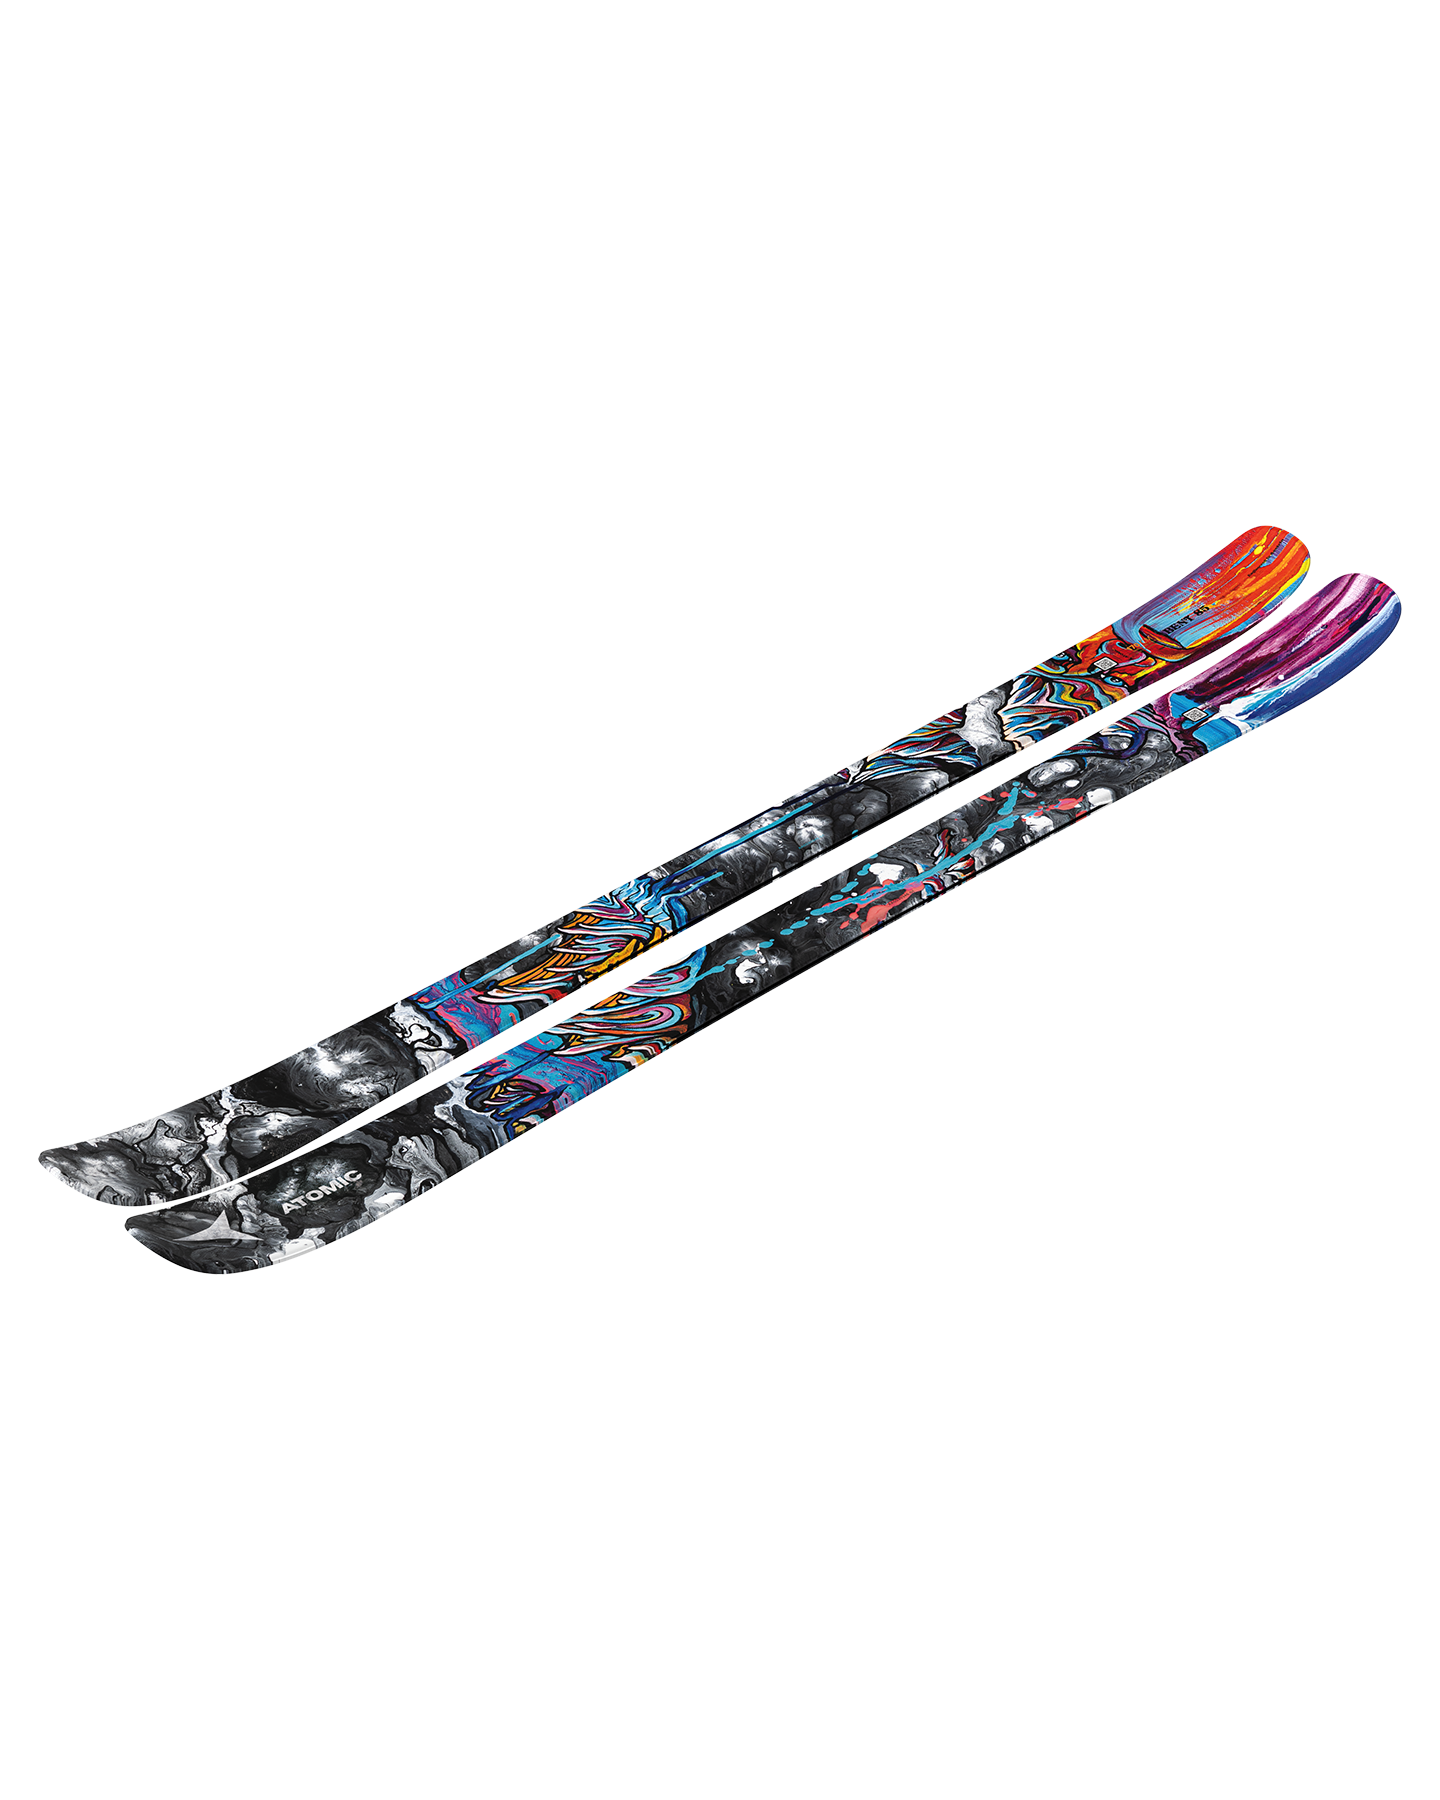 Atomic Bent 85 Skis - 2025 Men's Snow Skis - Trojan Wake Ski Snow